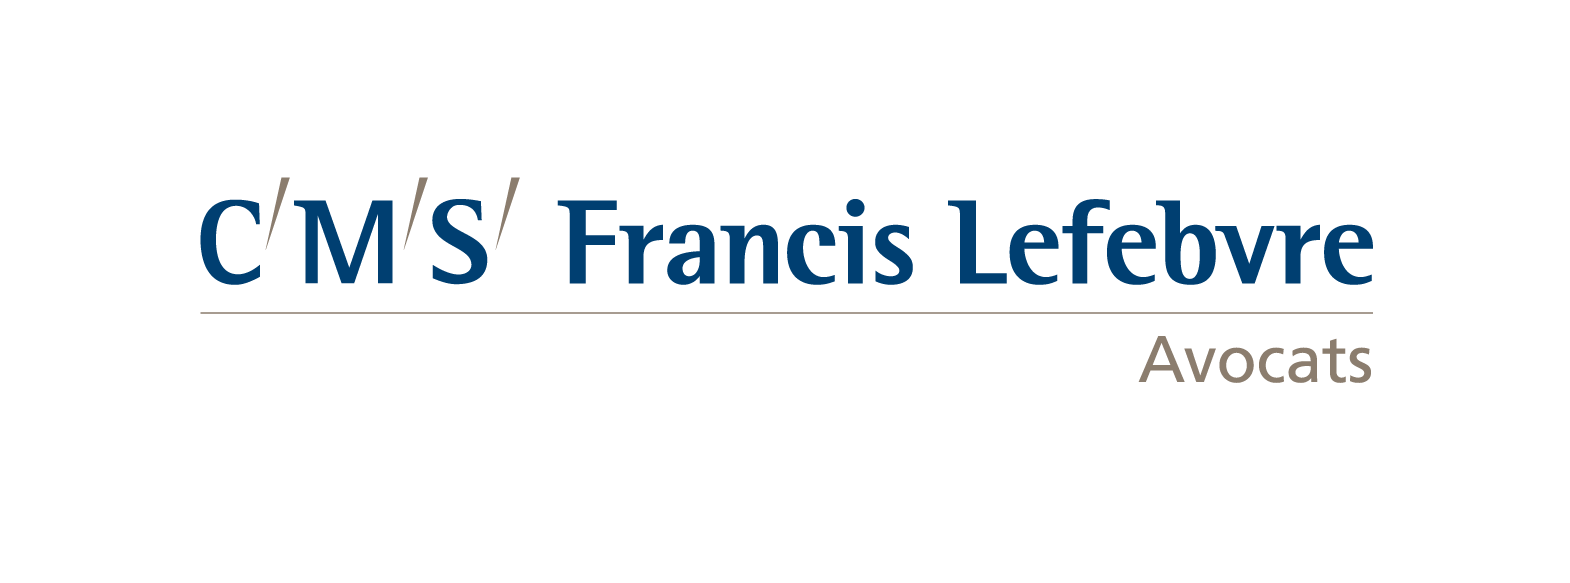 CMS FRANCIS LEFEBVRE - Master professionnel Droit et pratique des relations de travail - Université Paris 2 Panthéon-Assas